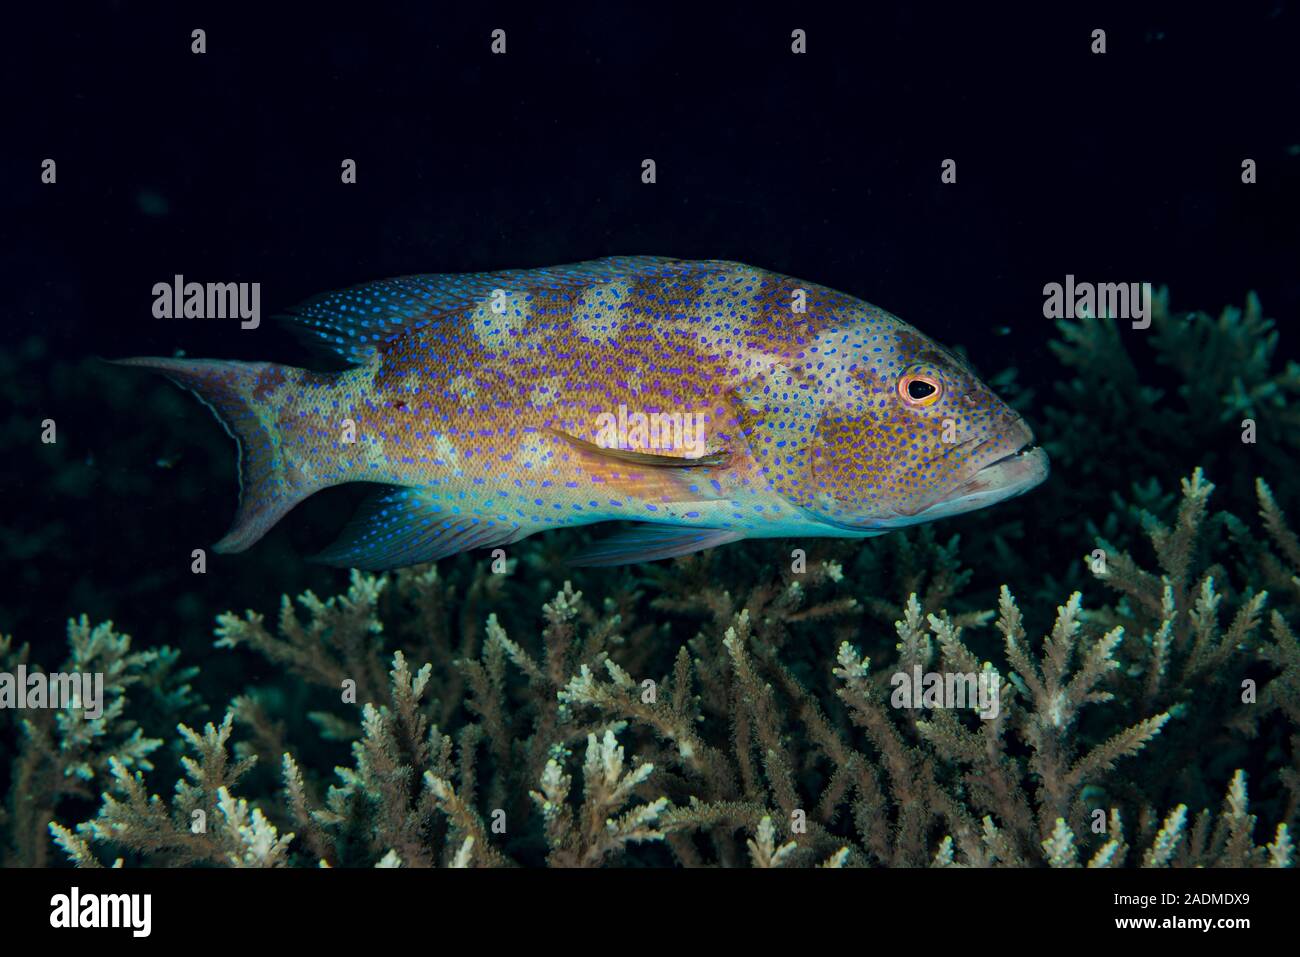 Fotografia subacquea di vita marina, creature marine Foto Stock